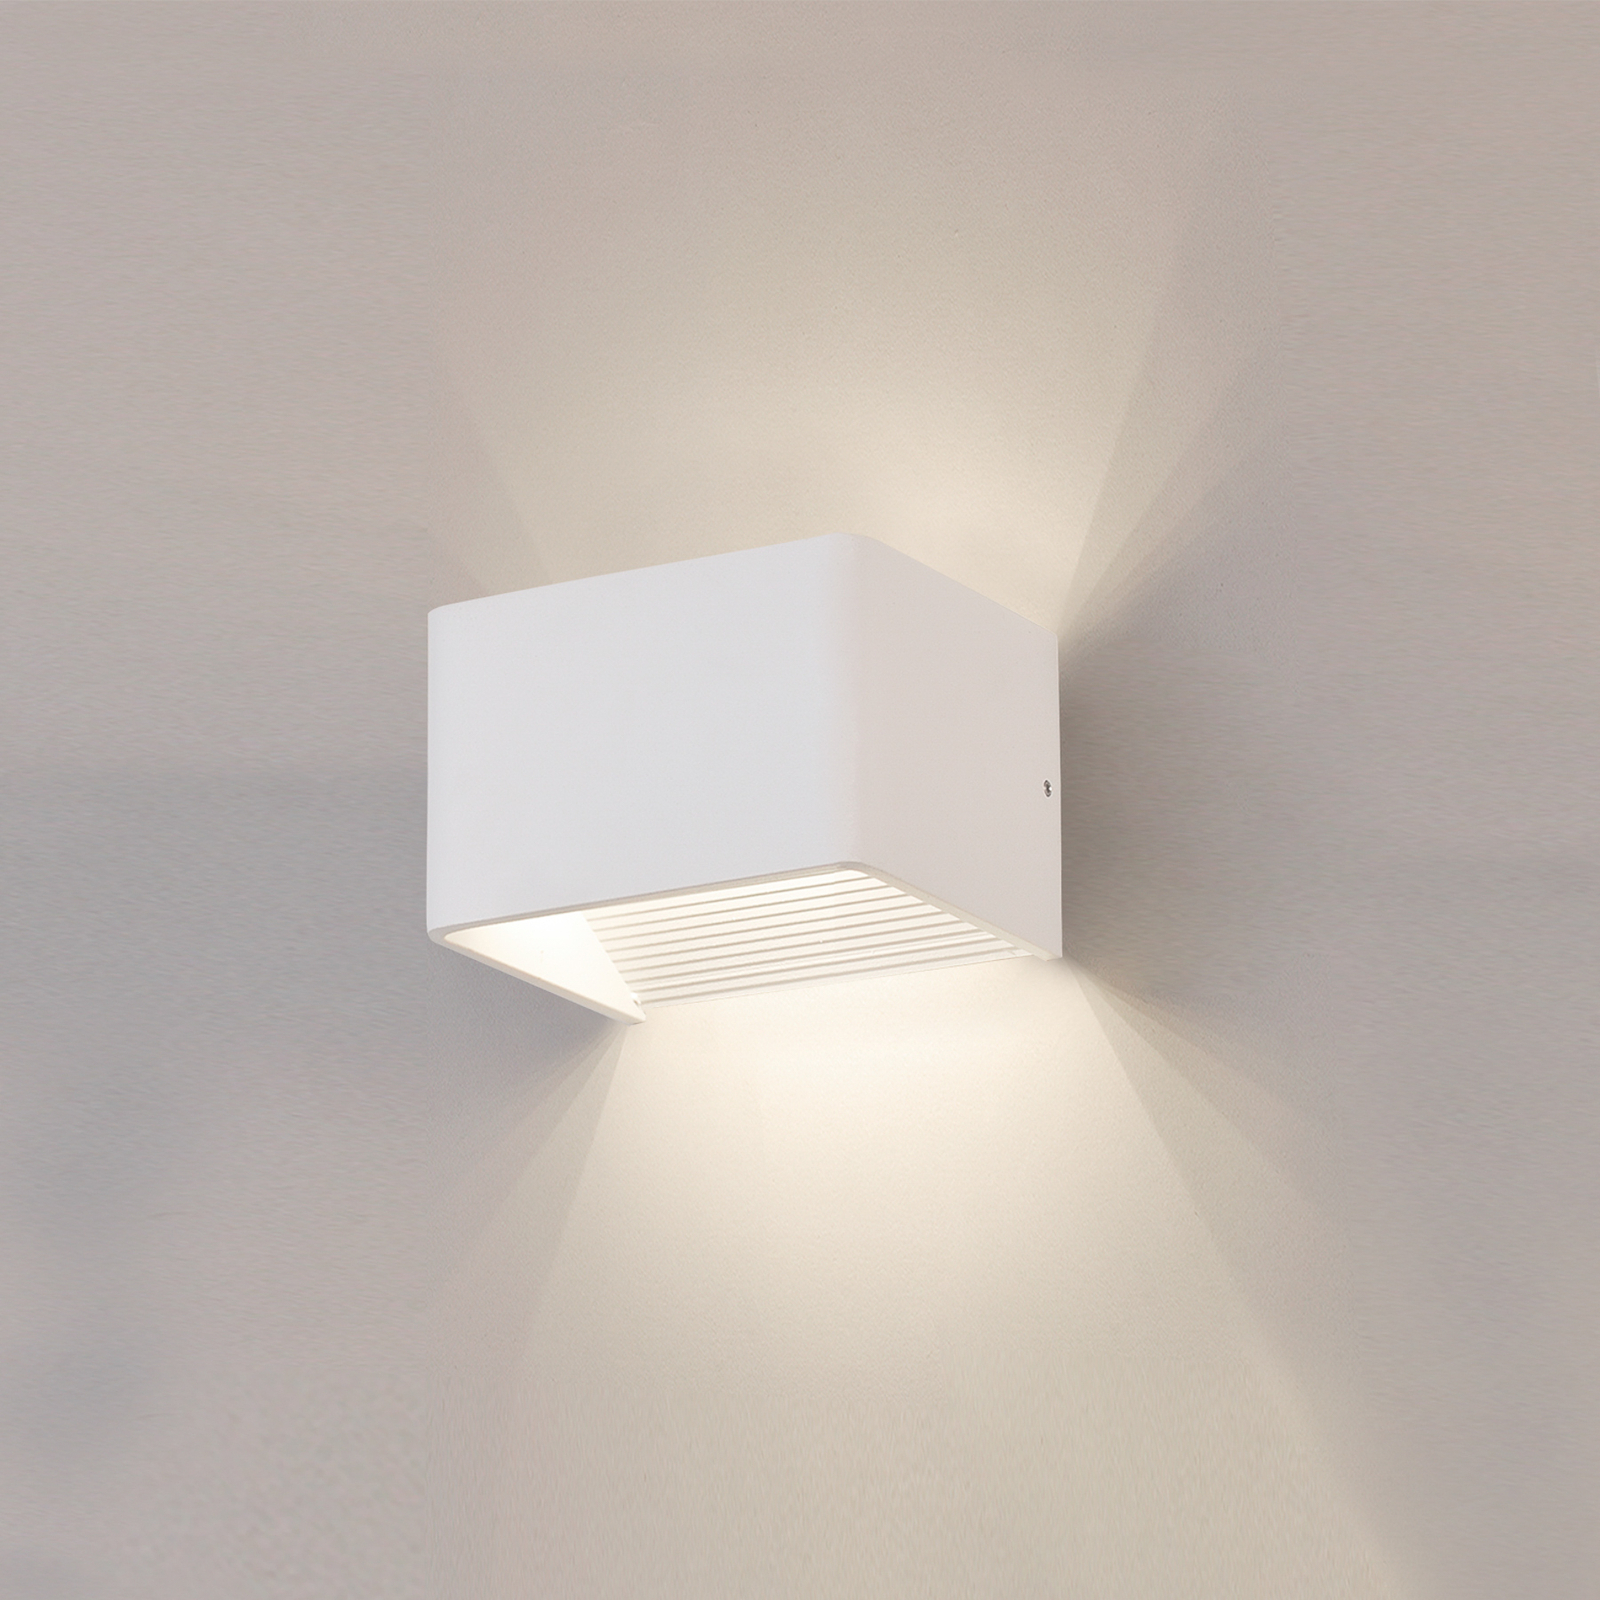 Stenska svetilka Icon LED, bela, navzgor/navzdol, širina 12 cm